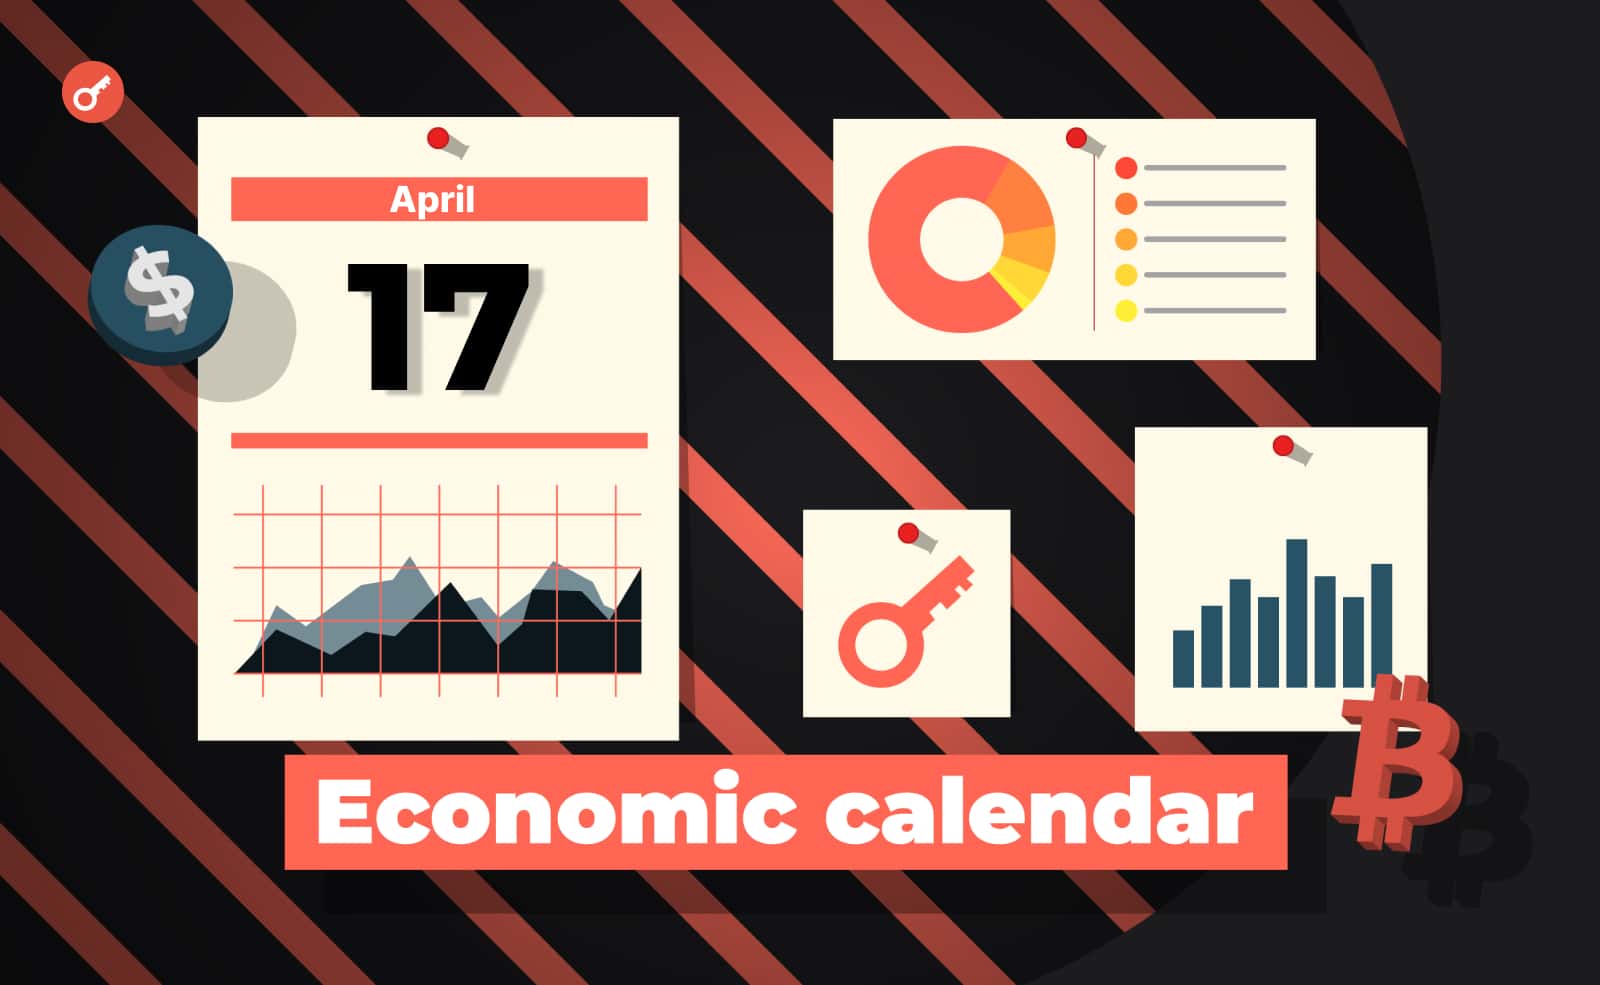 Экономический календарь 17-21 апреля: отчеты Уолл-стрит и момент истины для рынка недвижимости. Заглавный коллаж новости.